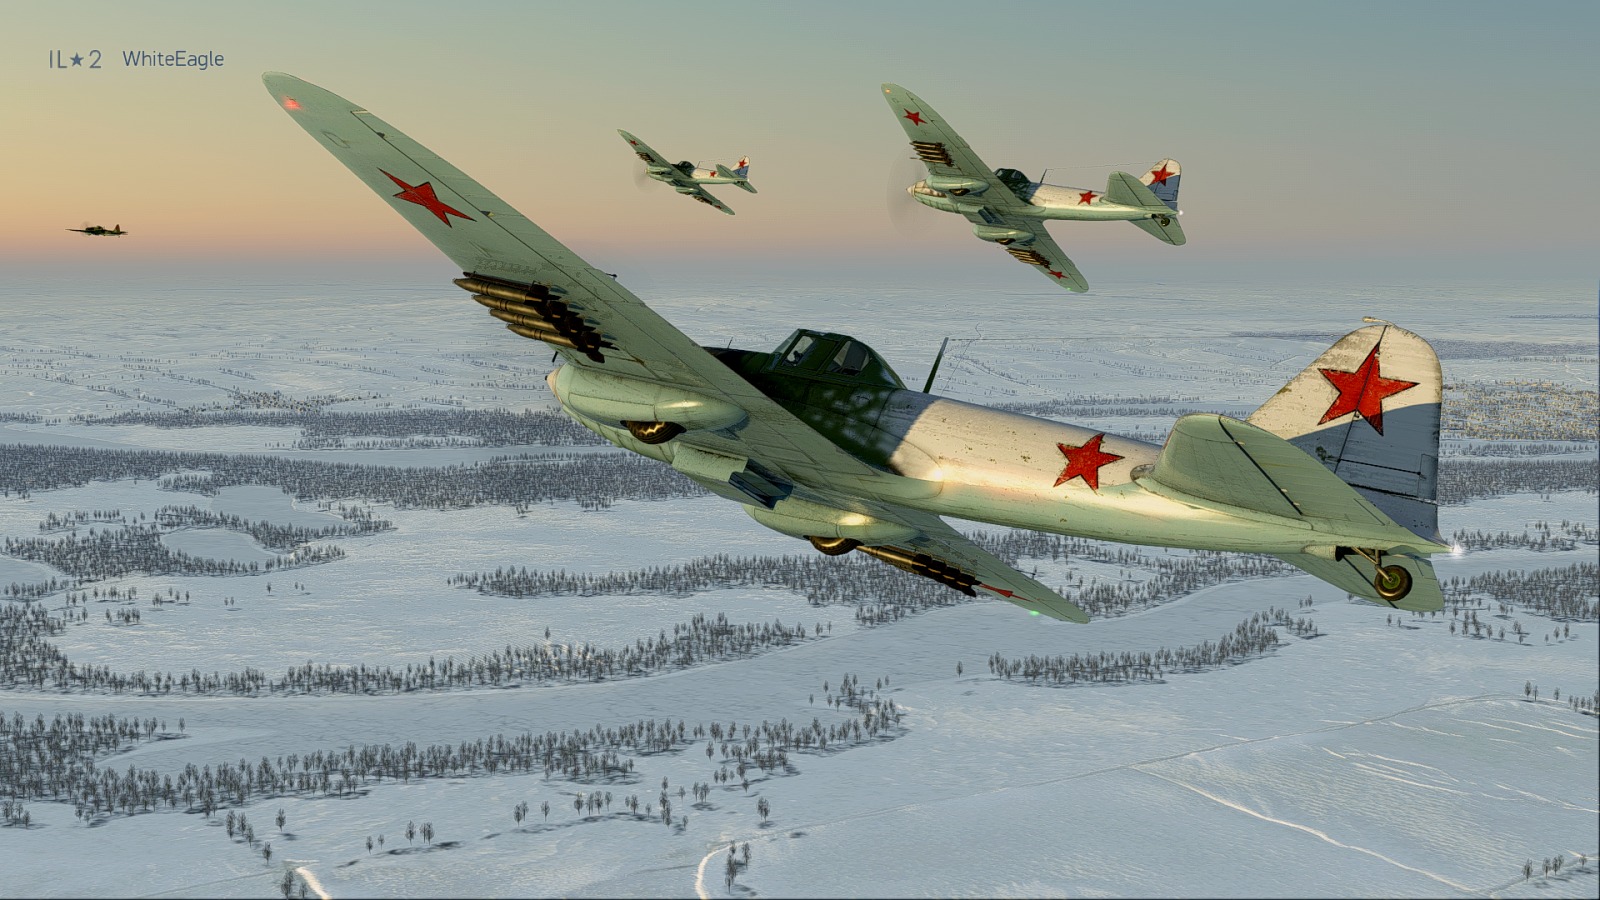 il-2 sturmovik battle of stalingrad gameplay